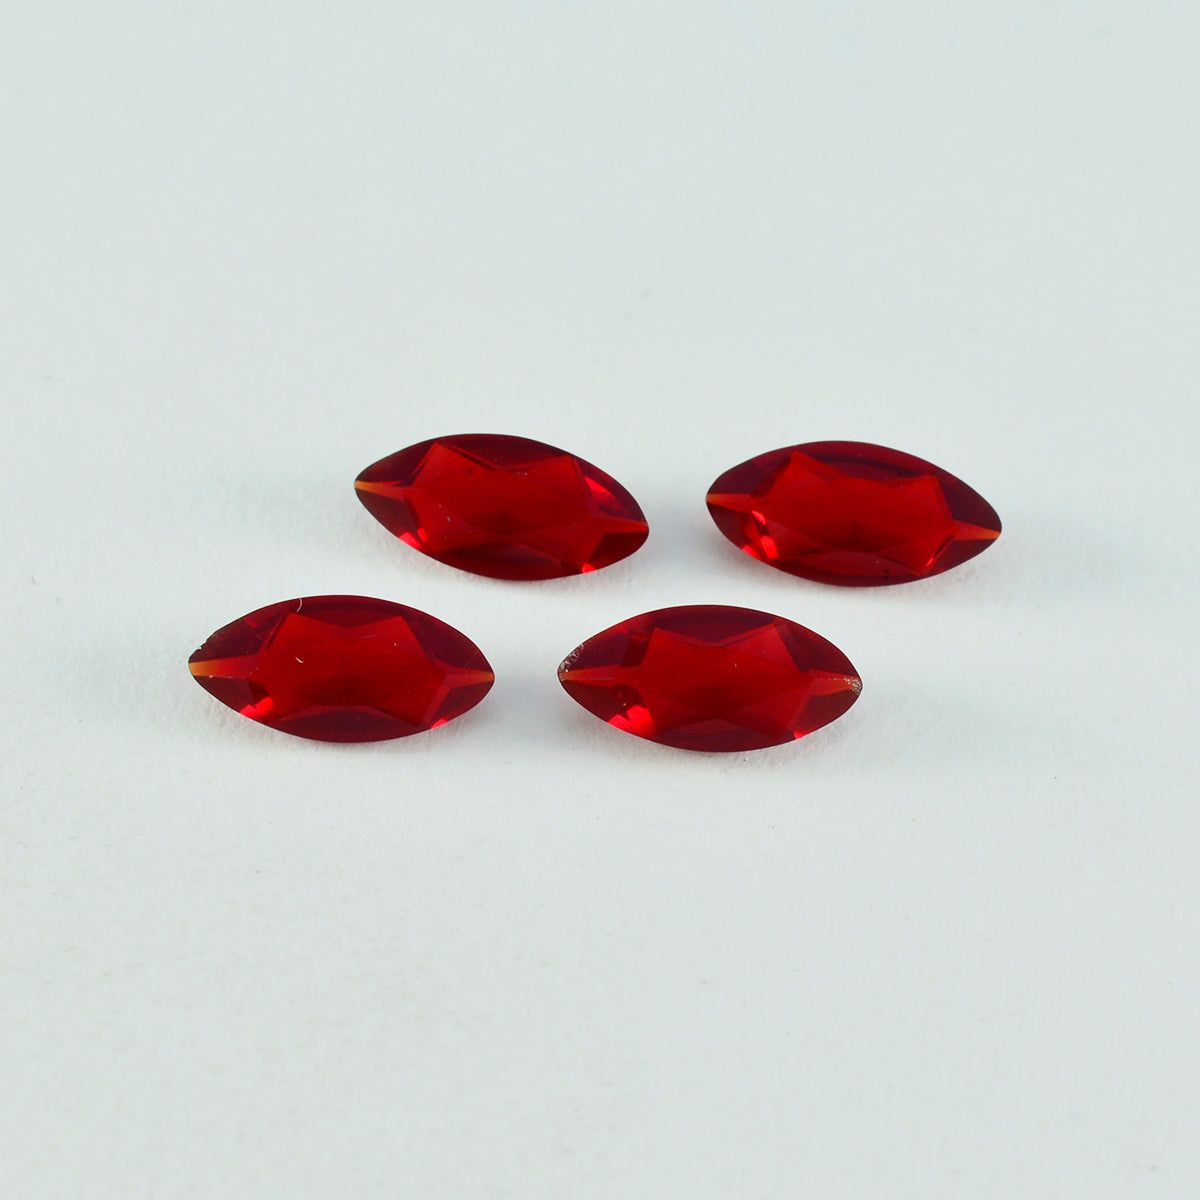 riyogems 1 шт. красный рубин cz ограненный 4x8 мм форма маркиза хорошее качество свободный драгоценный камень